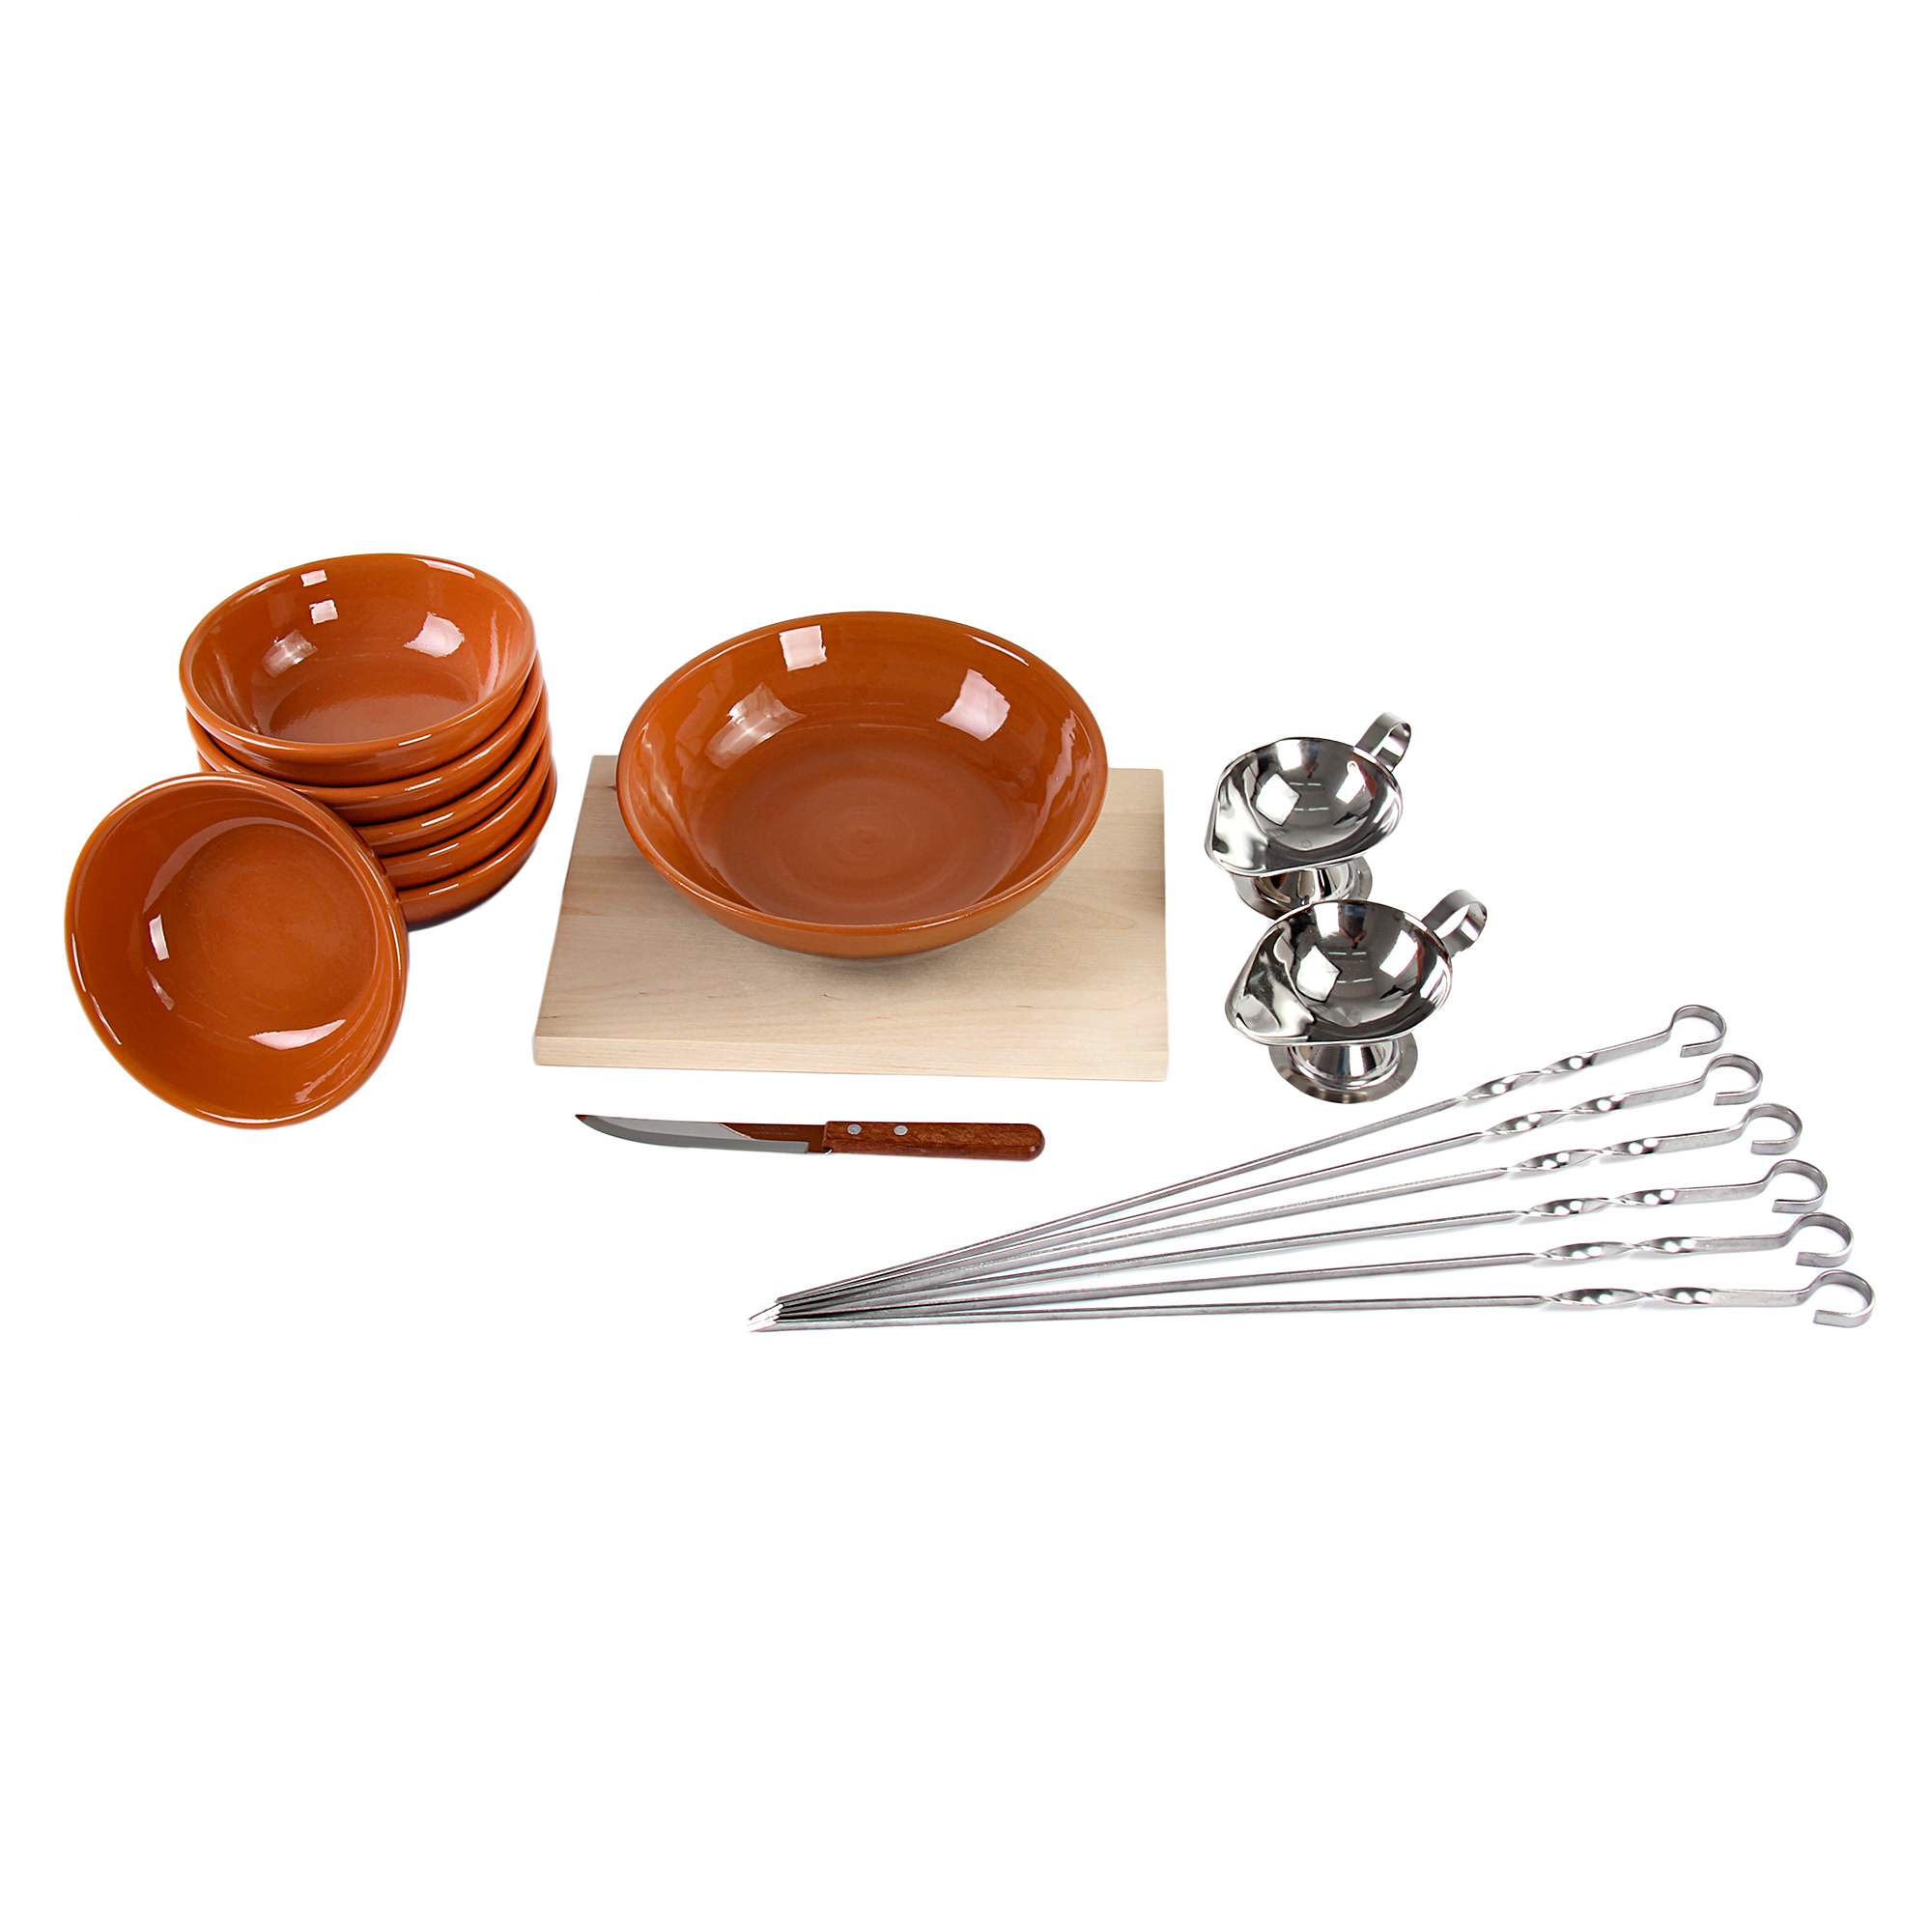 Набор салатников пикник-5 Вятская керамика набор керамических горшков для запекания вятская керамика 4 предмета